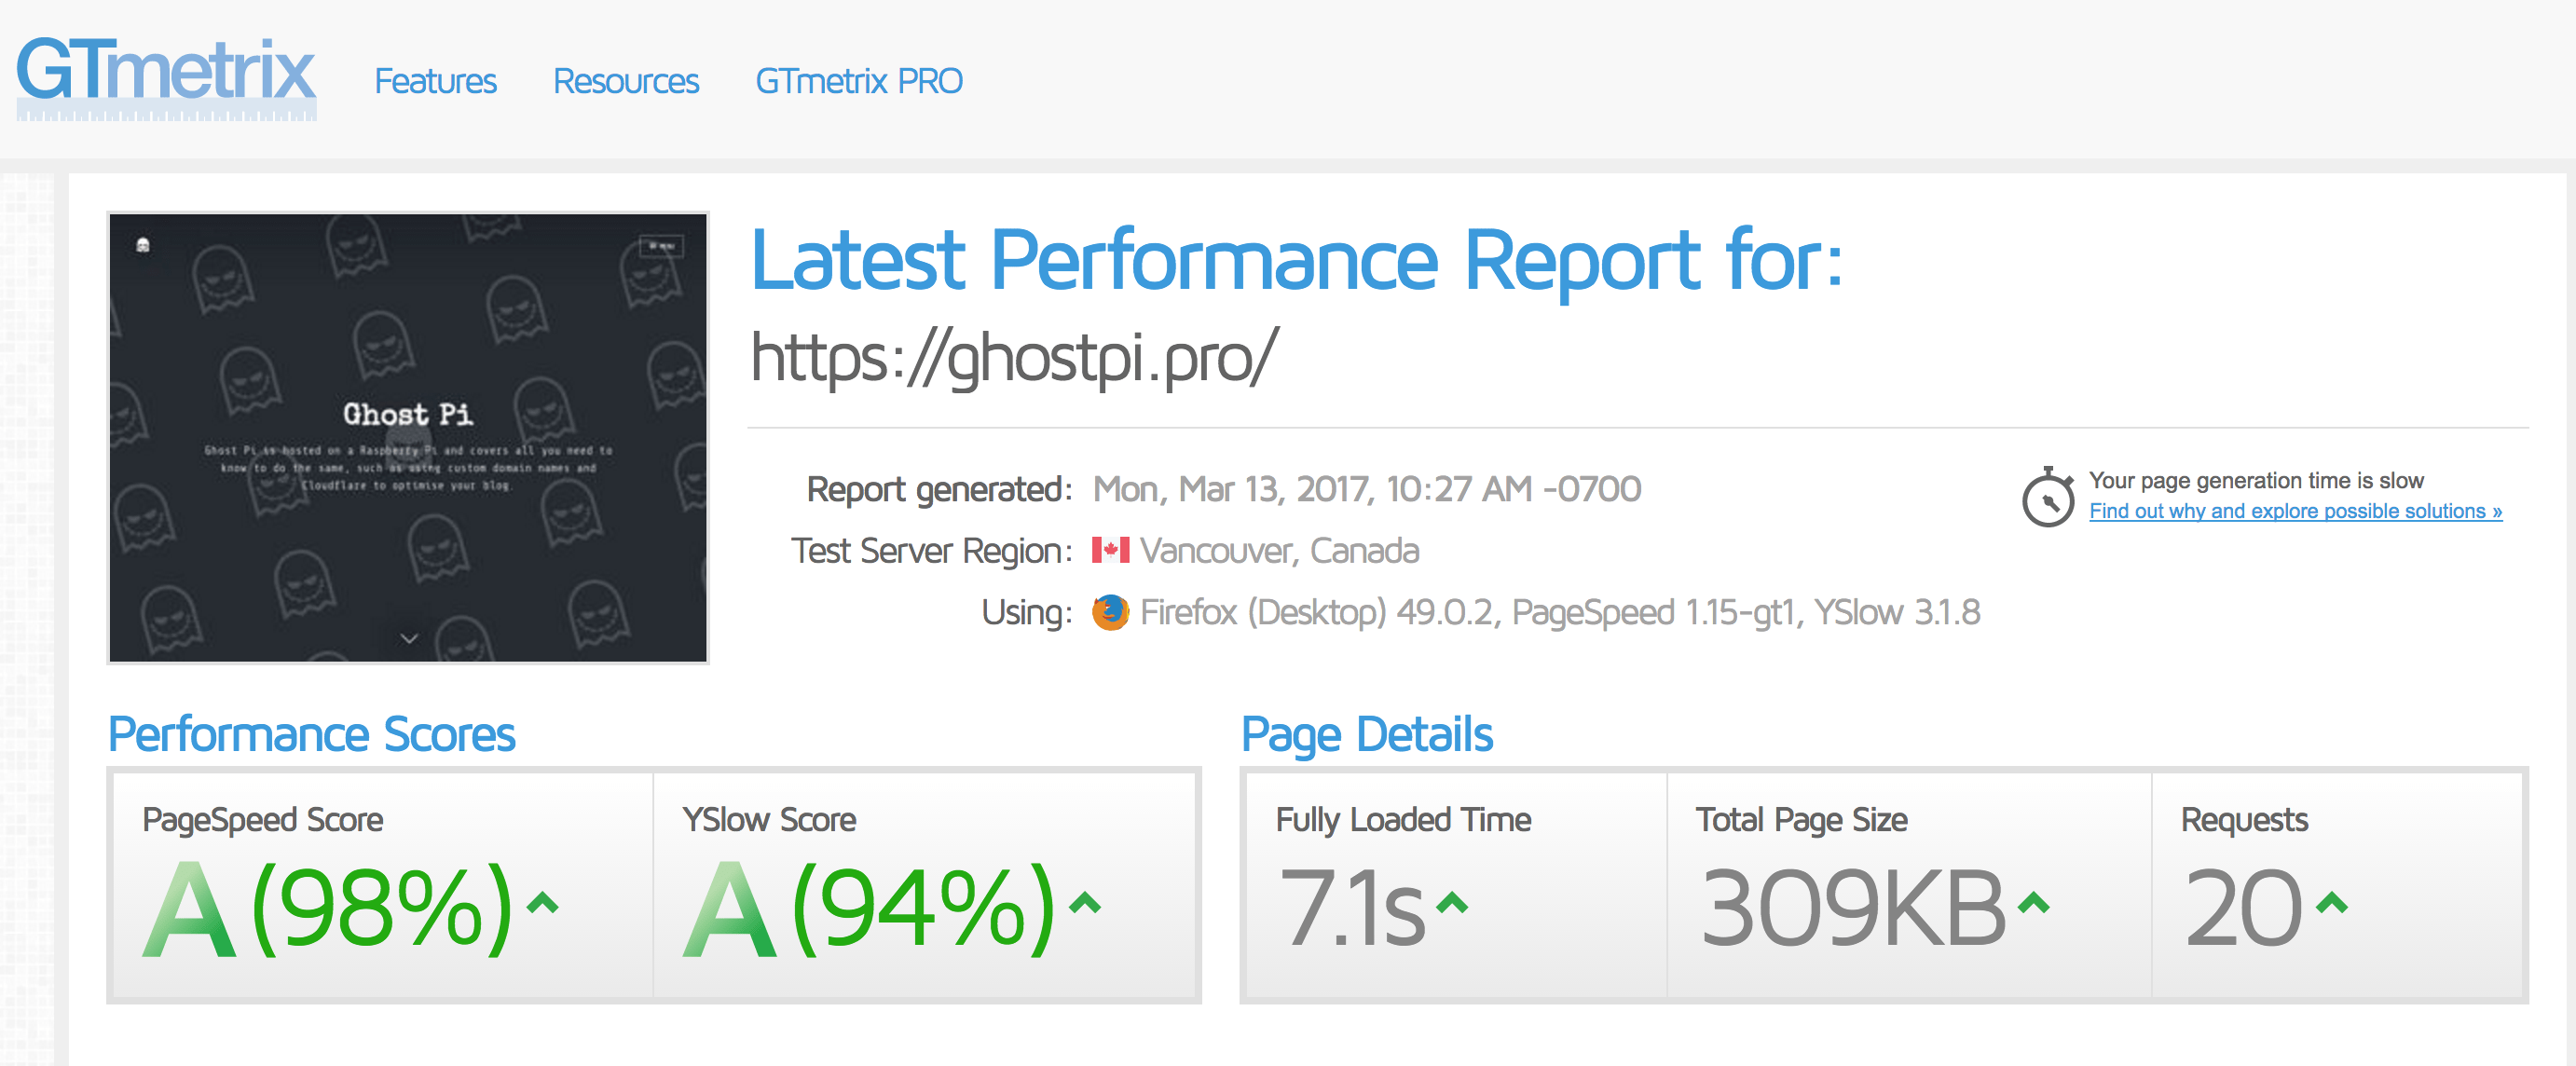 GhostPi's GTmetrix Score - 98%!